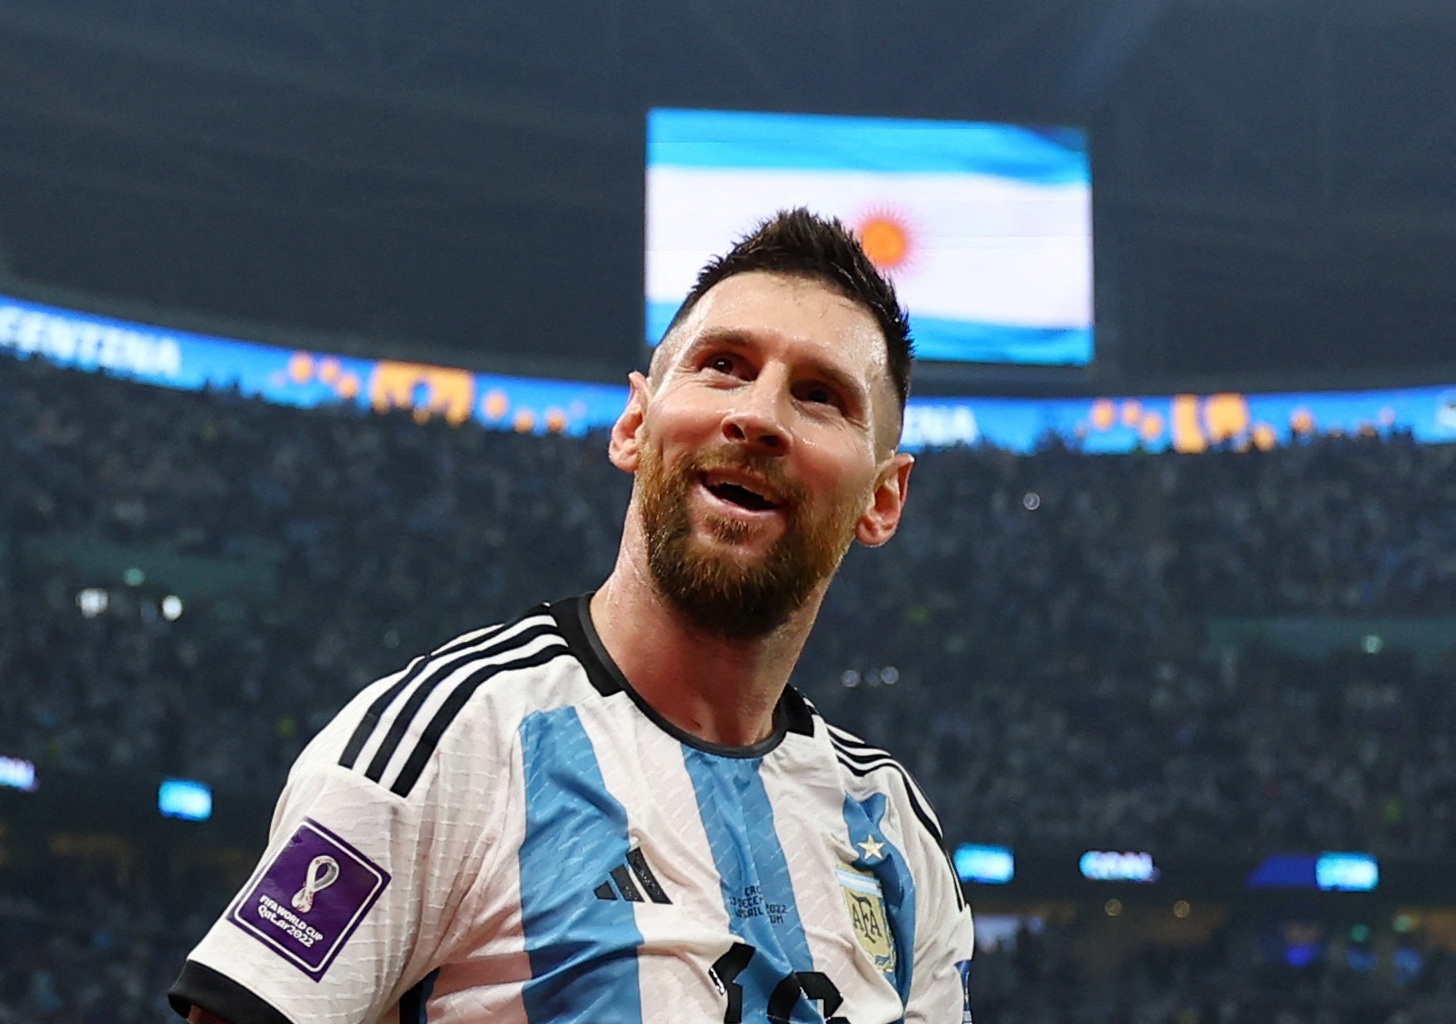 Siêu sao bóng đá Lionel Messi đã đặt chân lên những đỉnh cao của bóng đá với tài năng và sự cống hiến của mình. Hãy theo dõi hình ảnh của anh ta để hiểu rõ hơn về con đường mà anh ta đã đi để trở thành một trong những cầu thủ vĩ đại nhất thế giới.